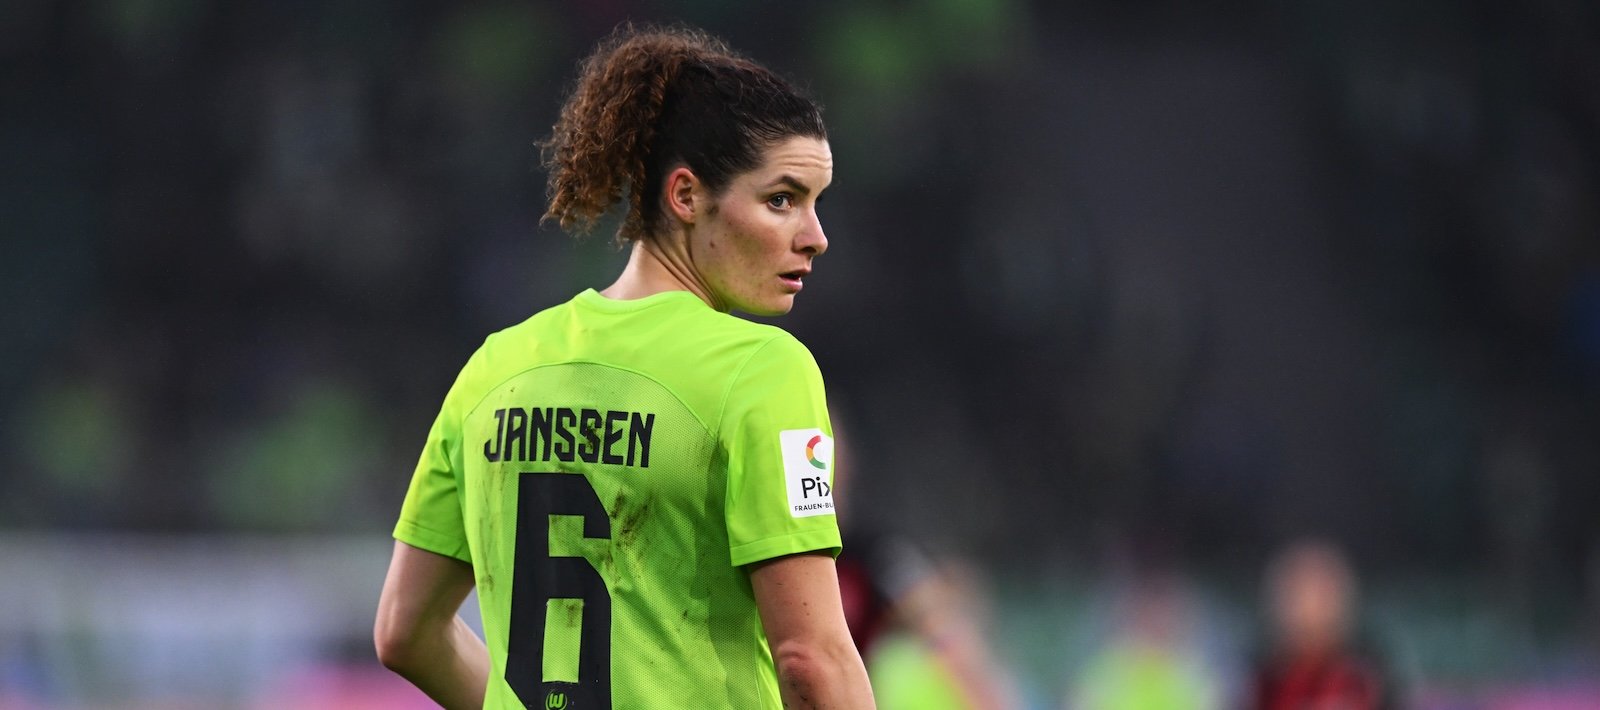 El Manchester United Women anuncia el fitxatge de Dominique Janssen per transferència gratuïta - Man United News And Transfer News